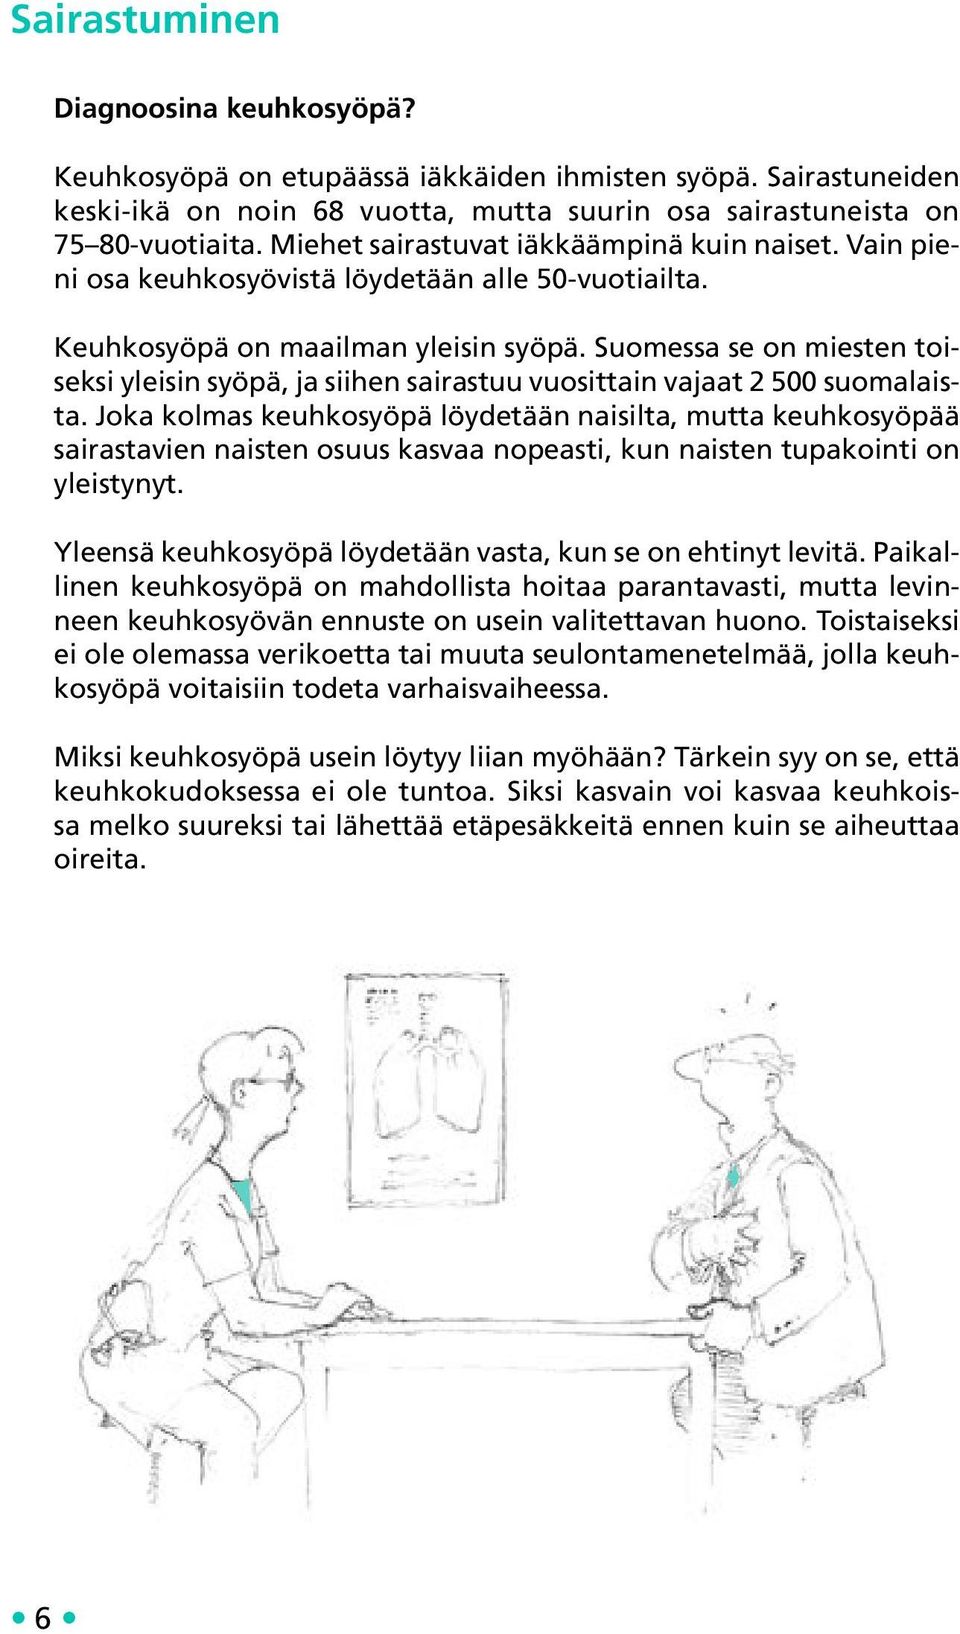 Suomessa se on miesten toiseksi yleisin syöpä, ja siihen sairastuu vuosittain vajaat 2 500 suomalaista.